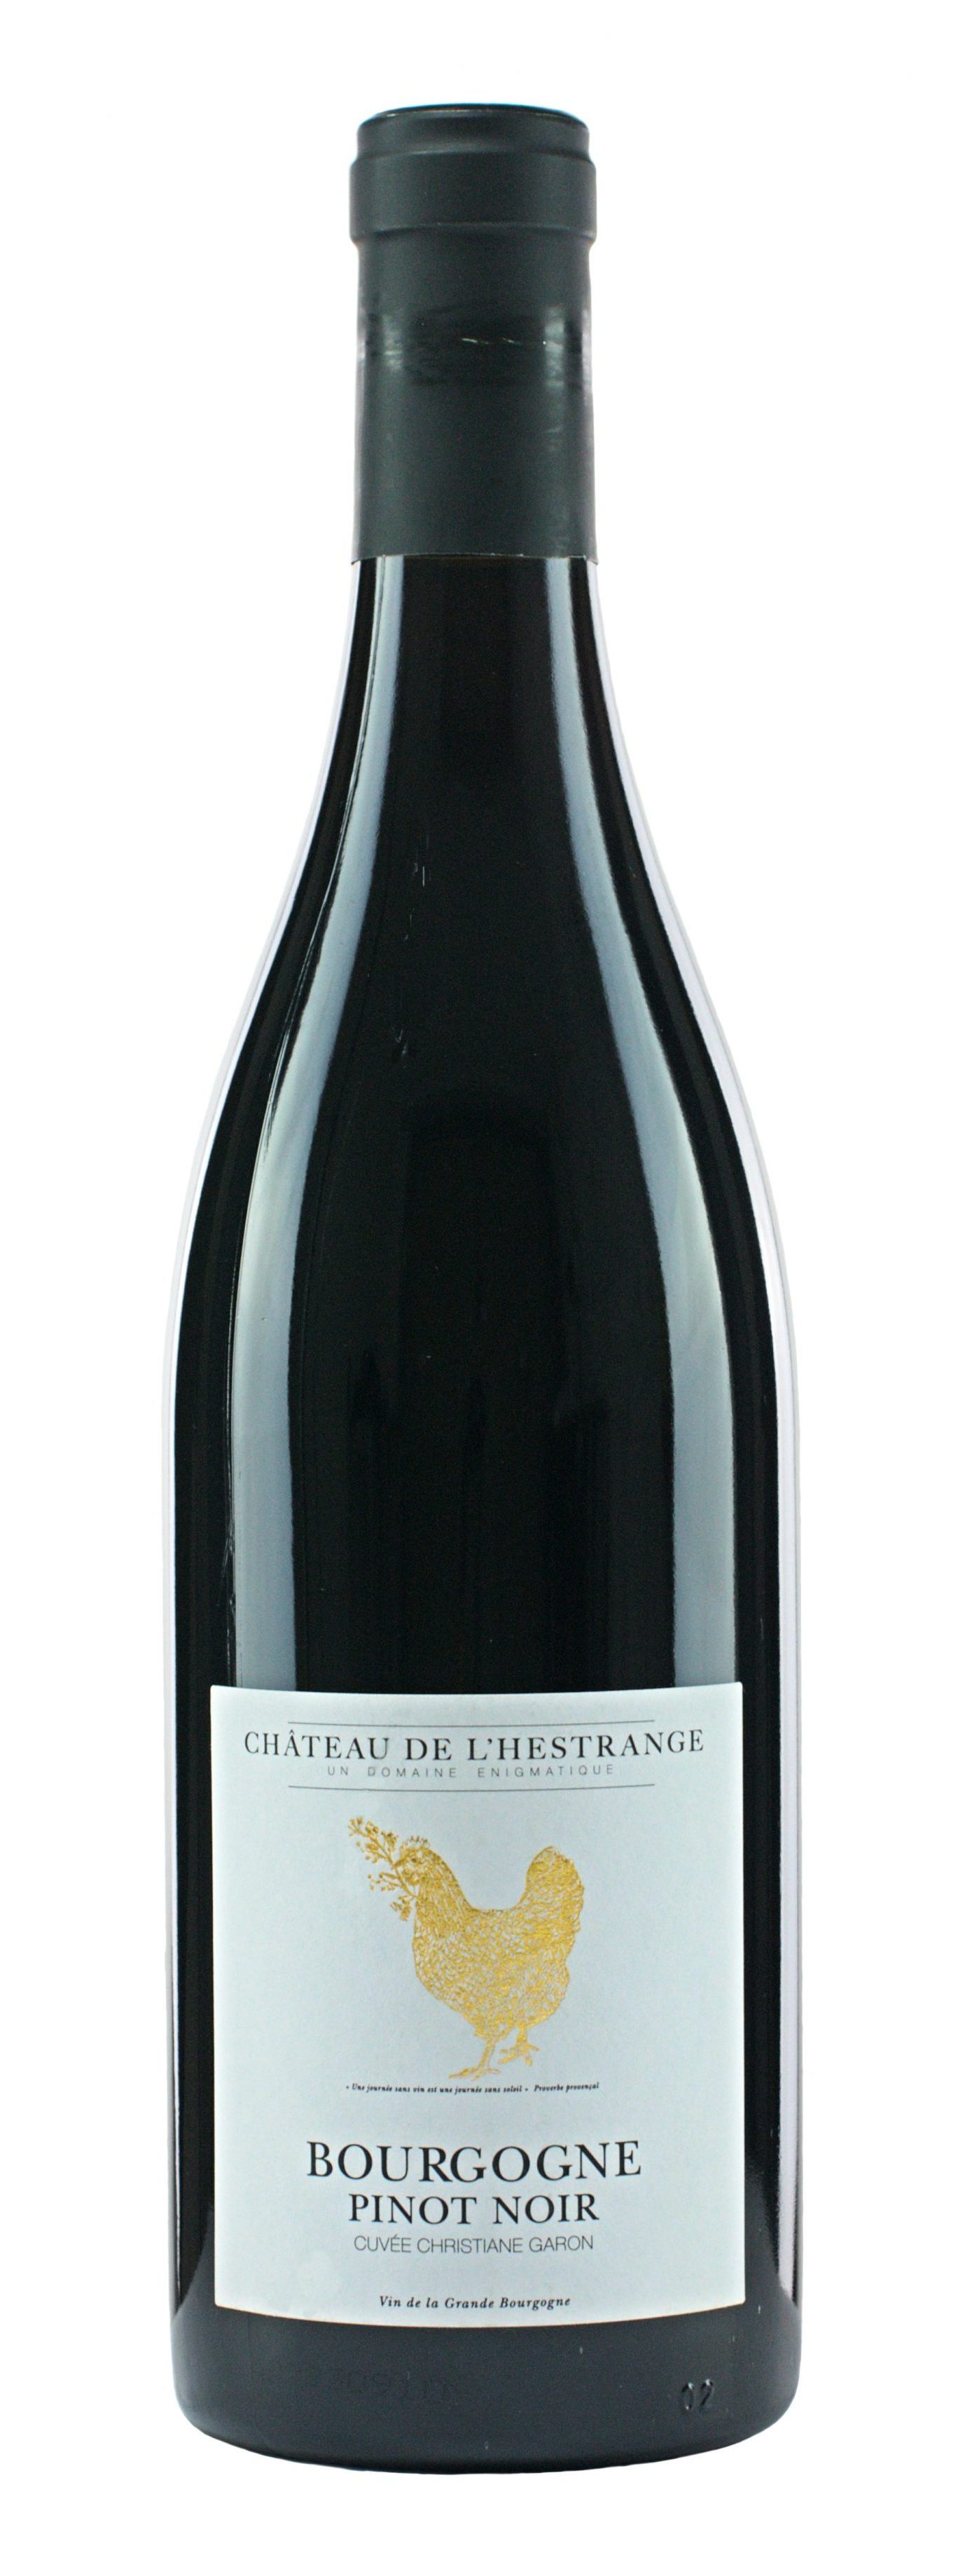 Chateau de l’Hestrange Burgundy Pinot Noir